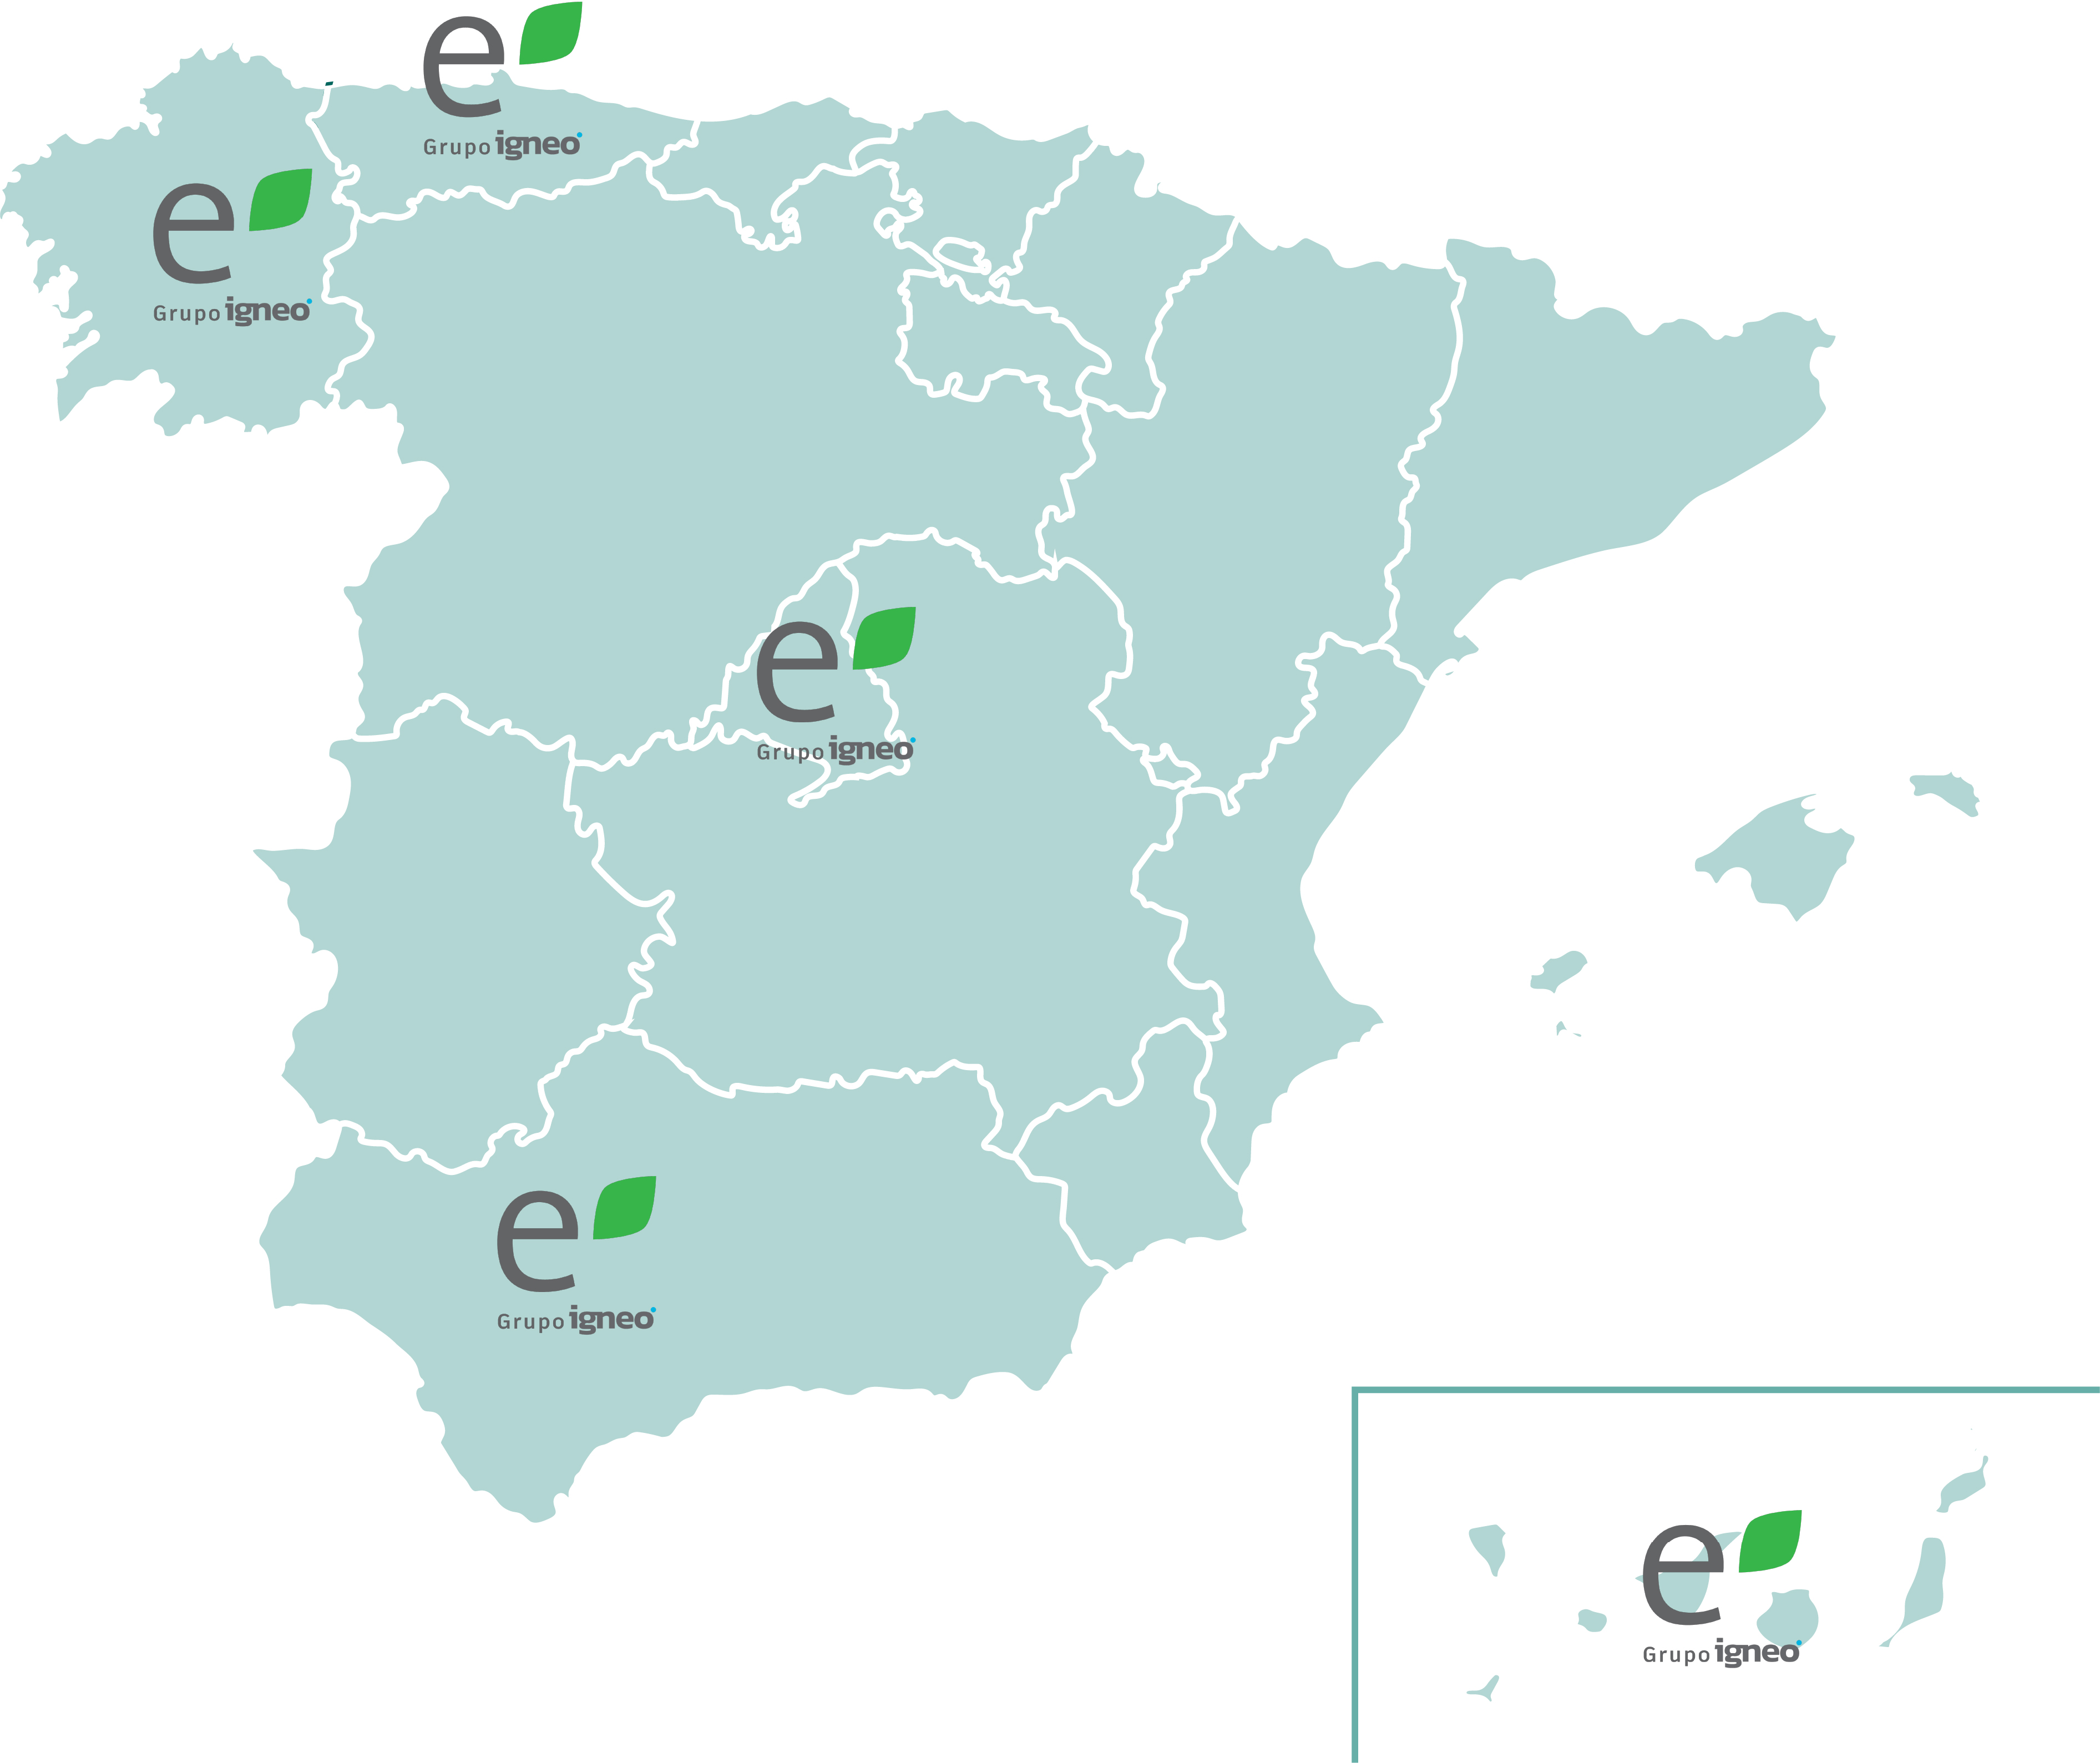 Mapa de la presencia de Emberiza en diferentes puntos de España